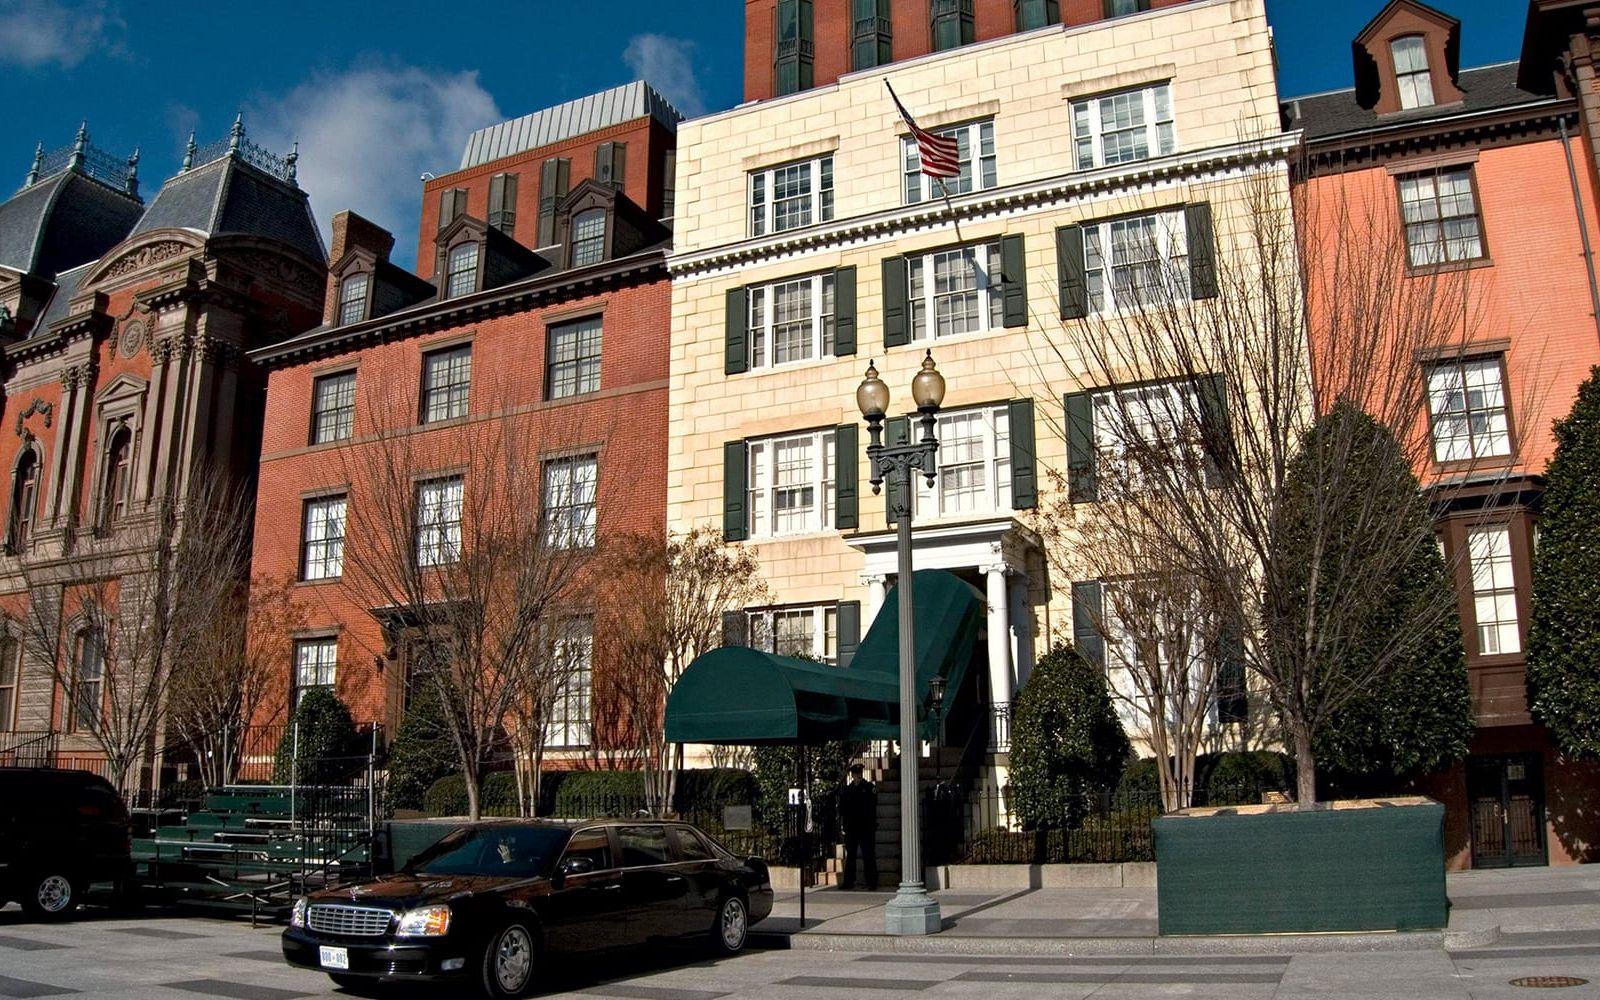 Blair House, Trumans tillfälliga bostad, används än idag som Vita husets officiella gästhus. Foto: TT